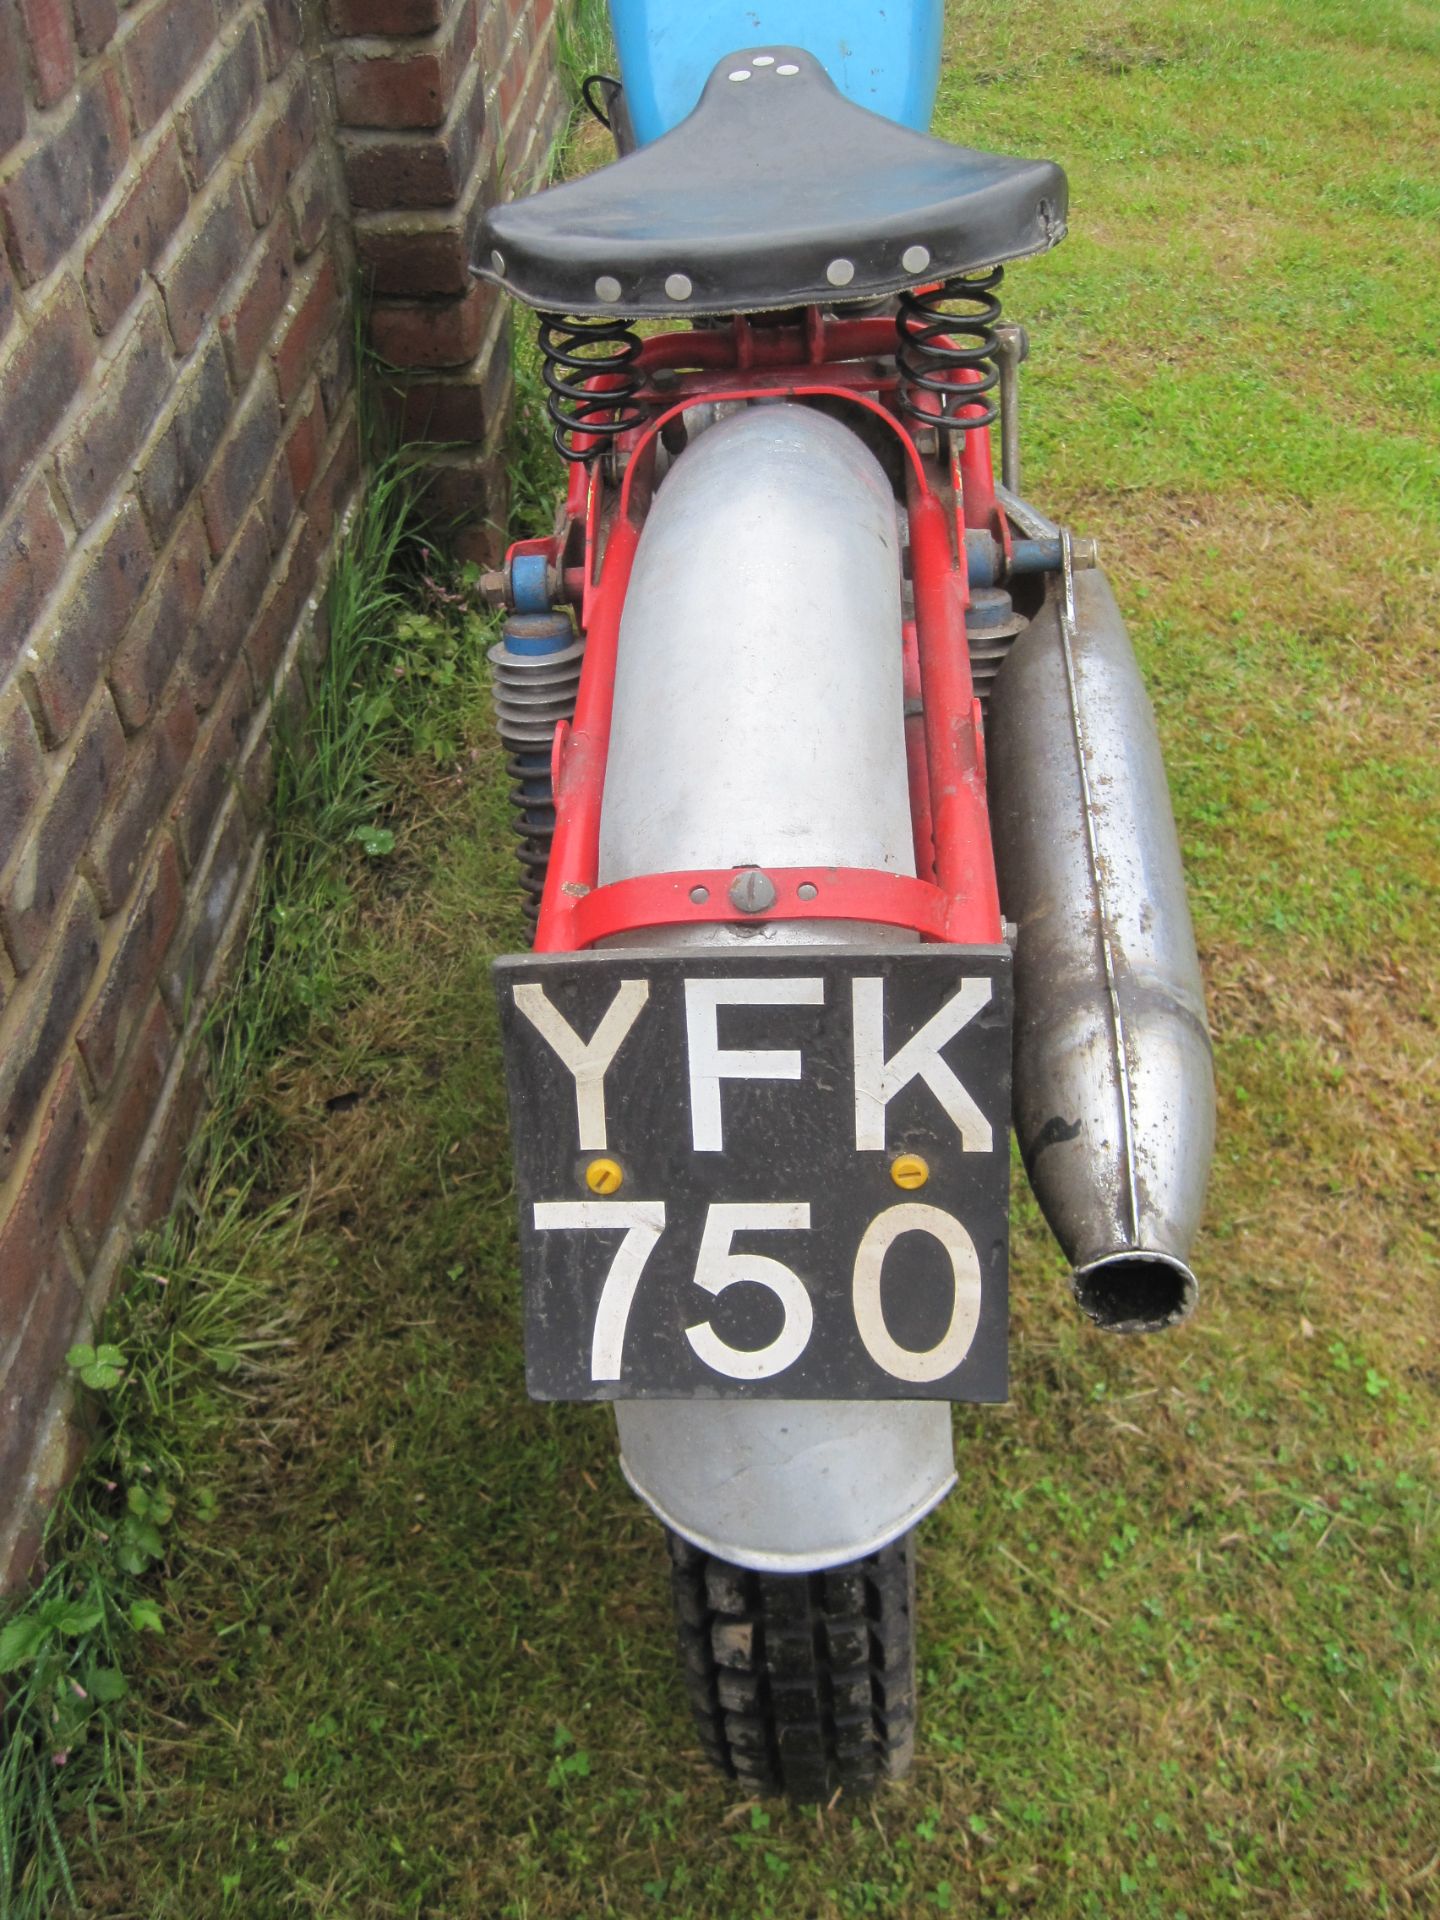 1960 197cc Greeves 24T Scottish Reg. No. YFK 750 Frame No. 60/1001 Engine No. 9E723B 4875 - Image 2 of 6